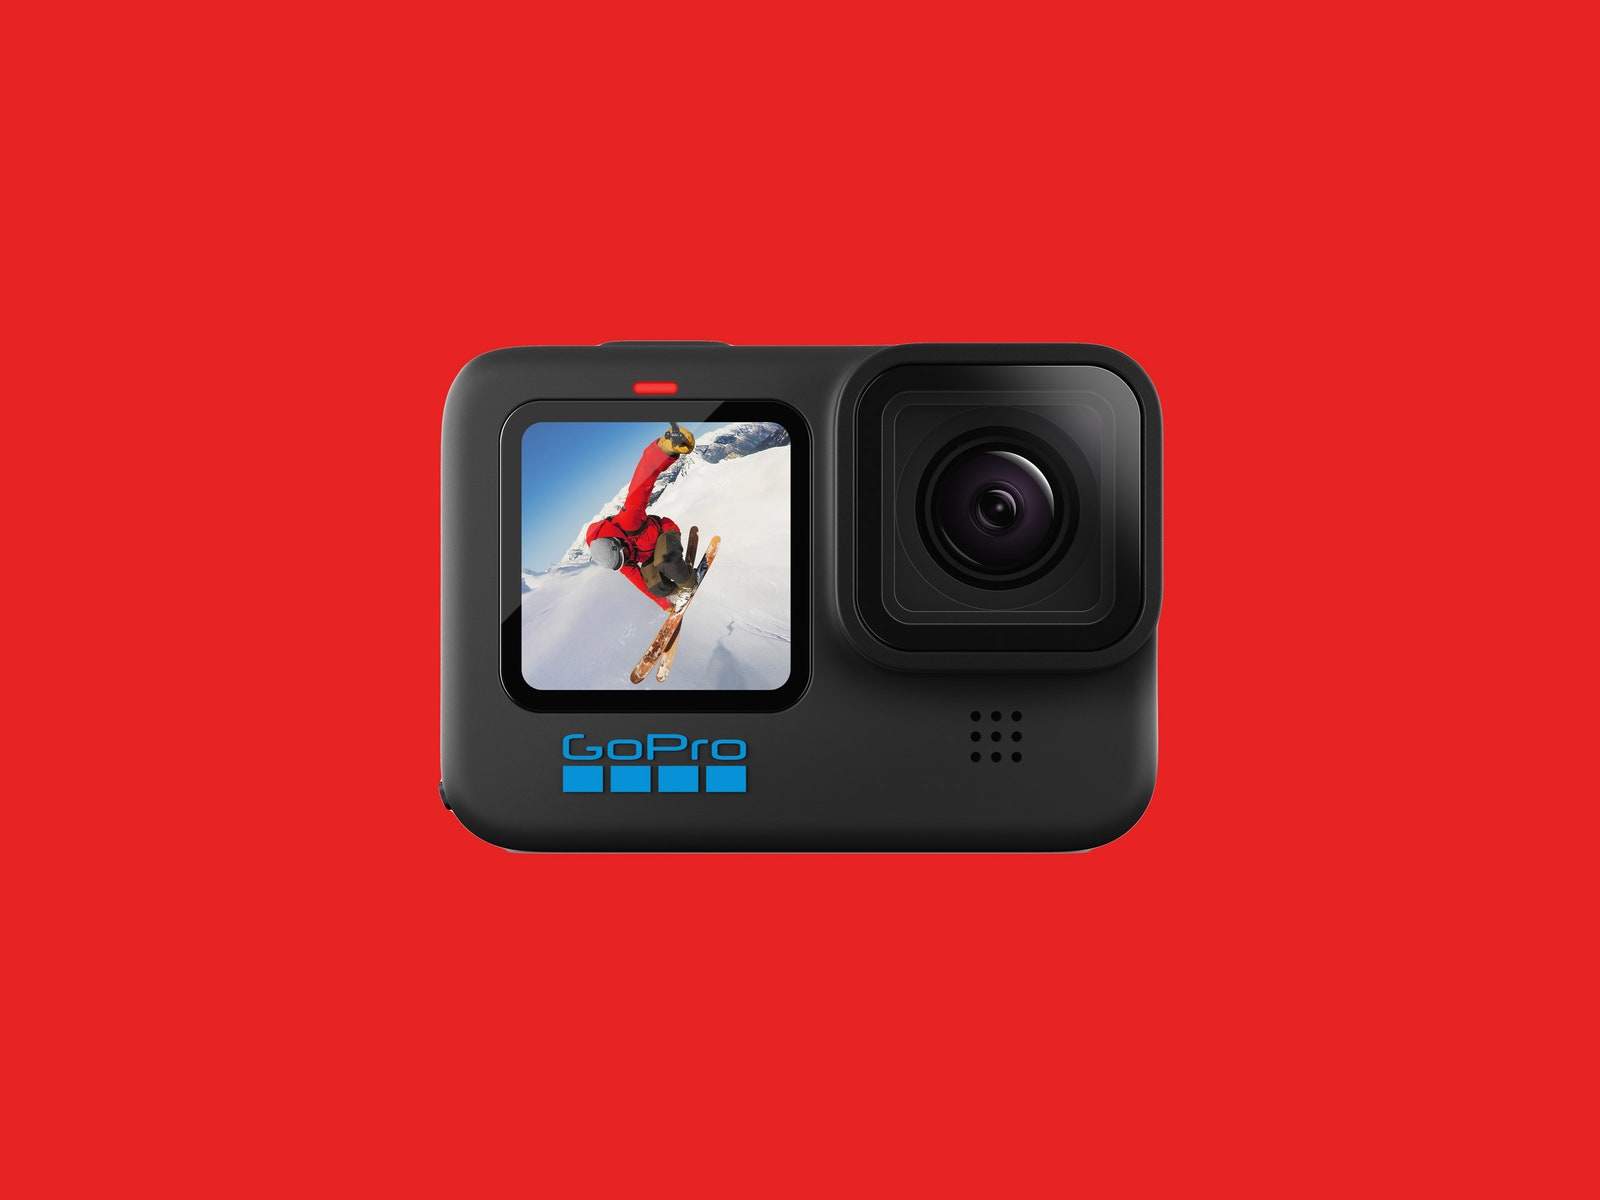 GoPro Hero 10 Black: GoPro Hero 10 Black là chiếc máy quay phim chuyên nghiệp được rất nhiều người yêu thích và sử dụng trên toàn thế giới. Với khả năng quay video độ nét cao, GoPro Hero 10 Black giúp bạn ghi lại những khoảnh khắc đáng nhớ và cực kỳ hấp dẫn.